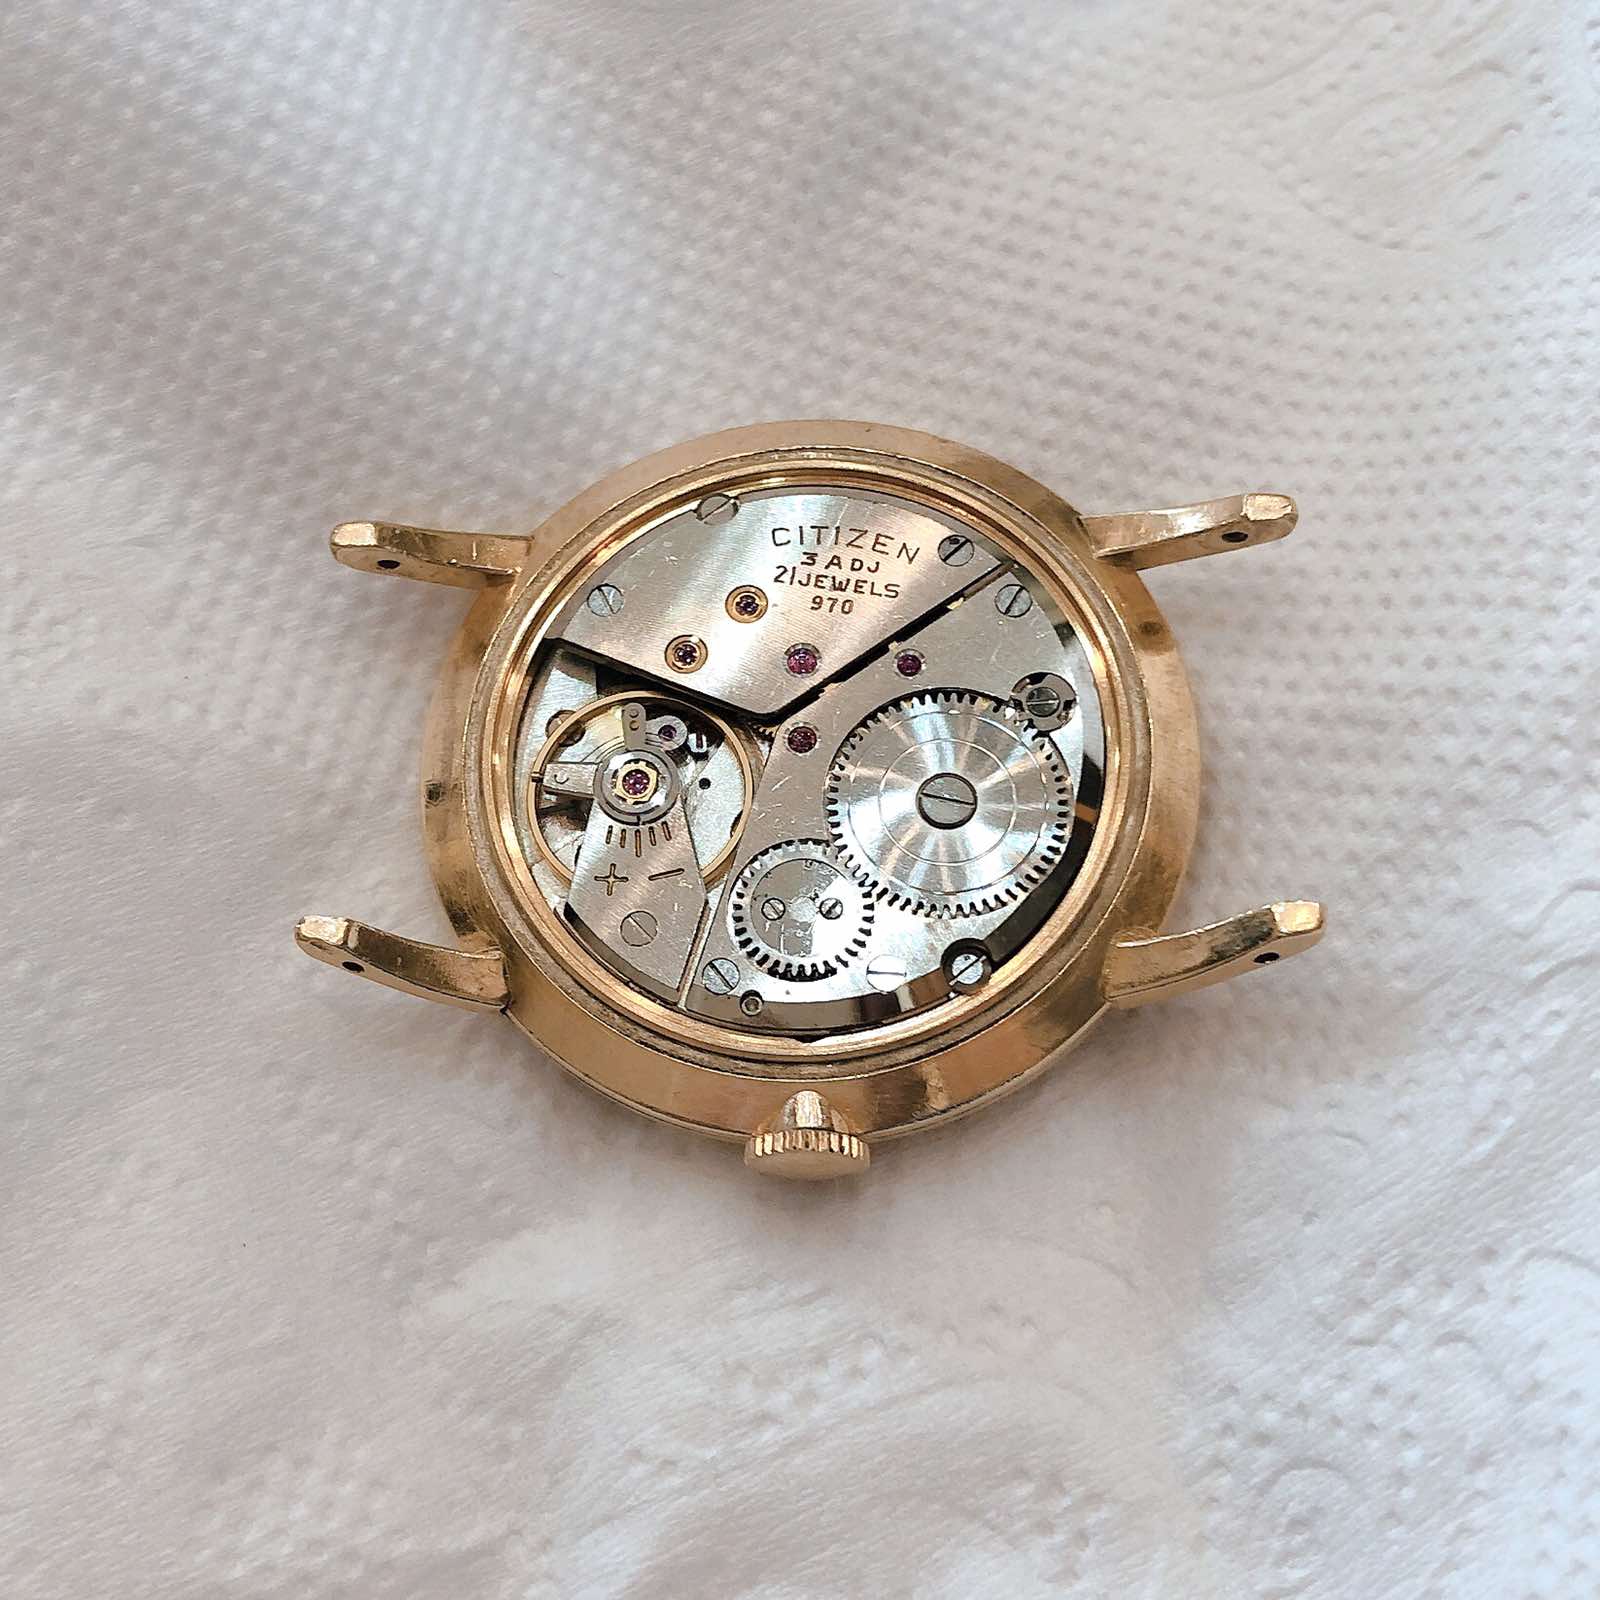 Đồng hồ cổ CITIZEN Deluxe Mặt Phật bọc vàng 14k goldfilled lên dây chính hãng nhật bản